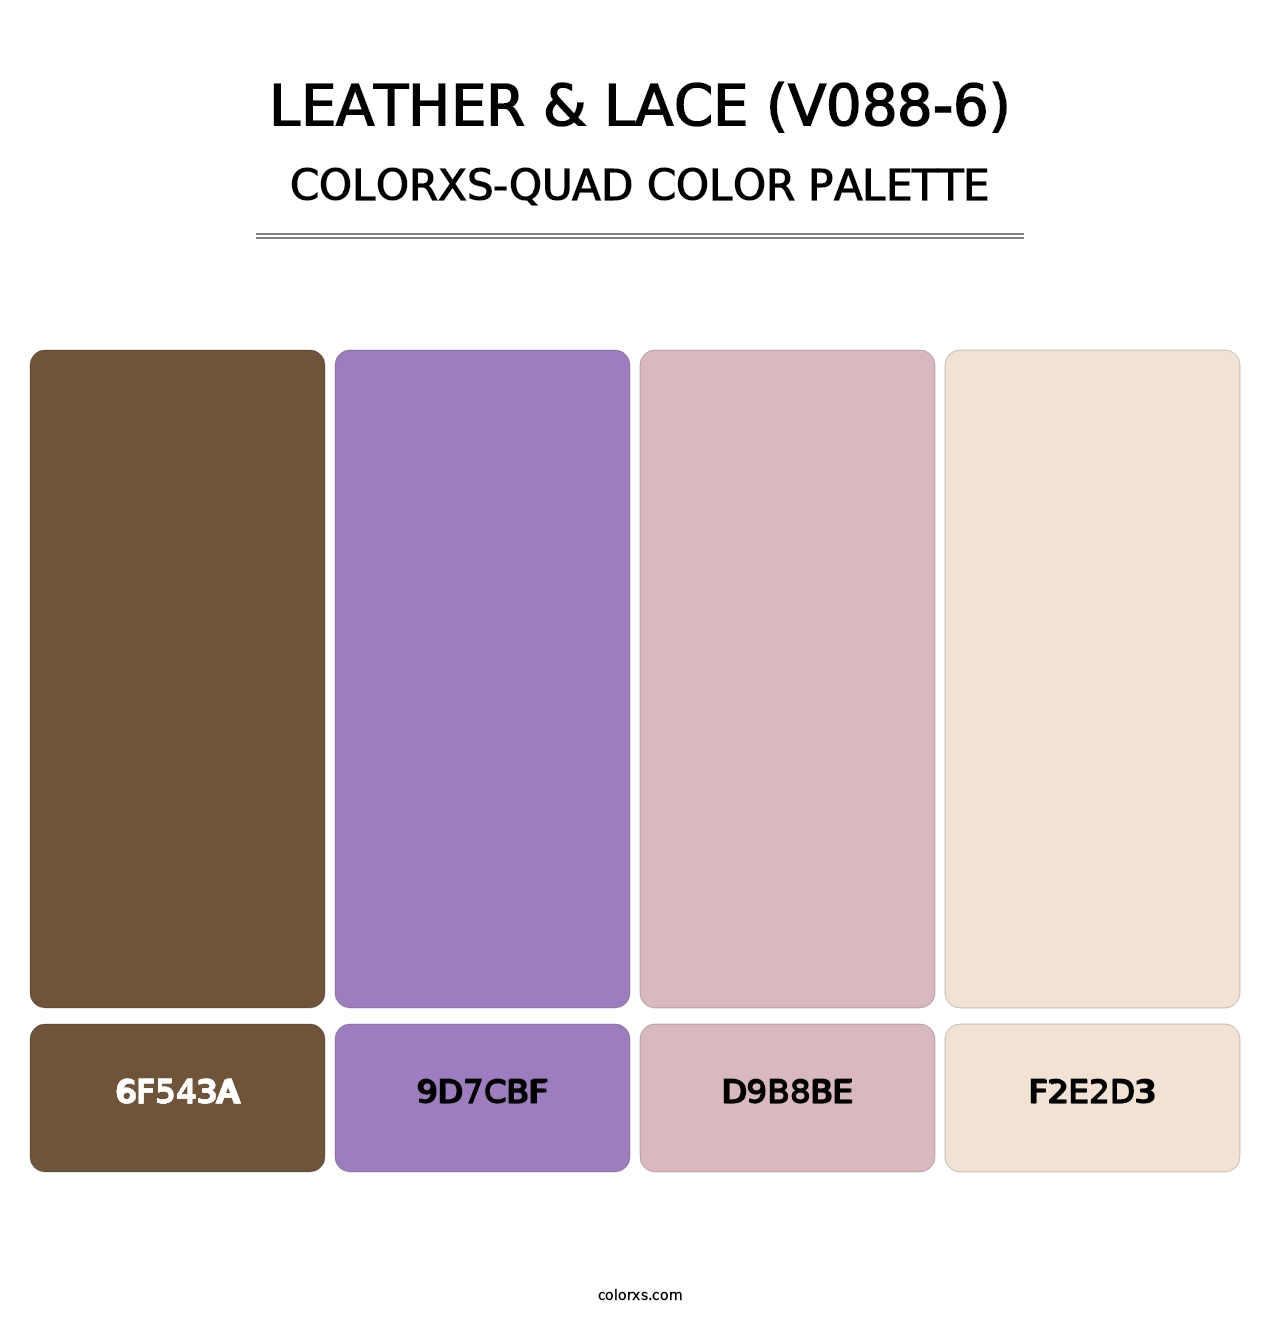 Leather & Lace (V088-6) - Colorxs Quad Palette